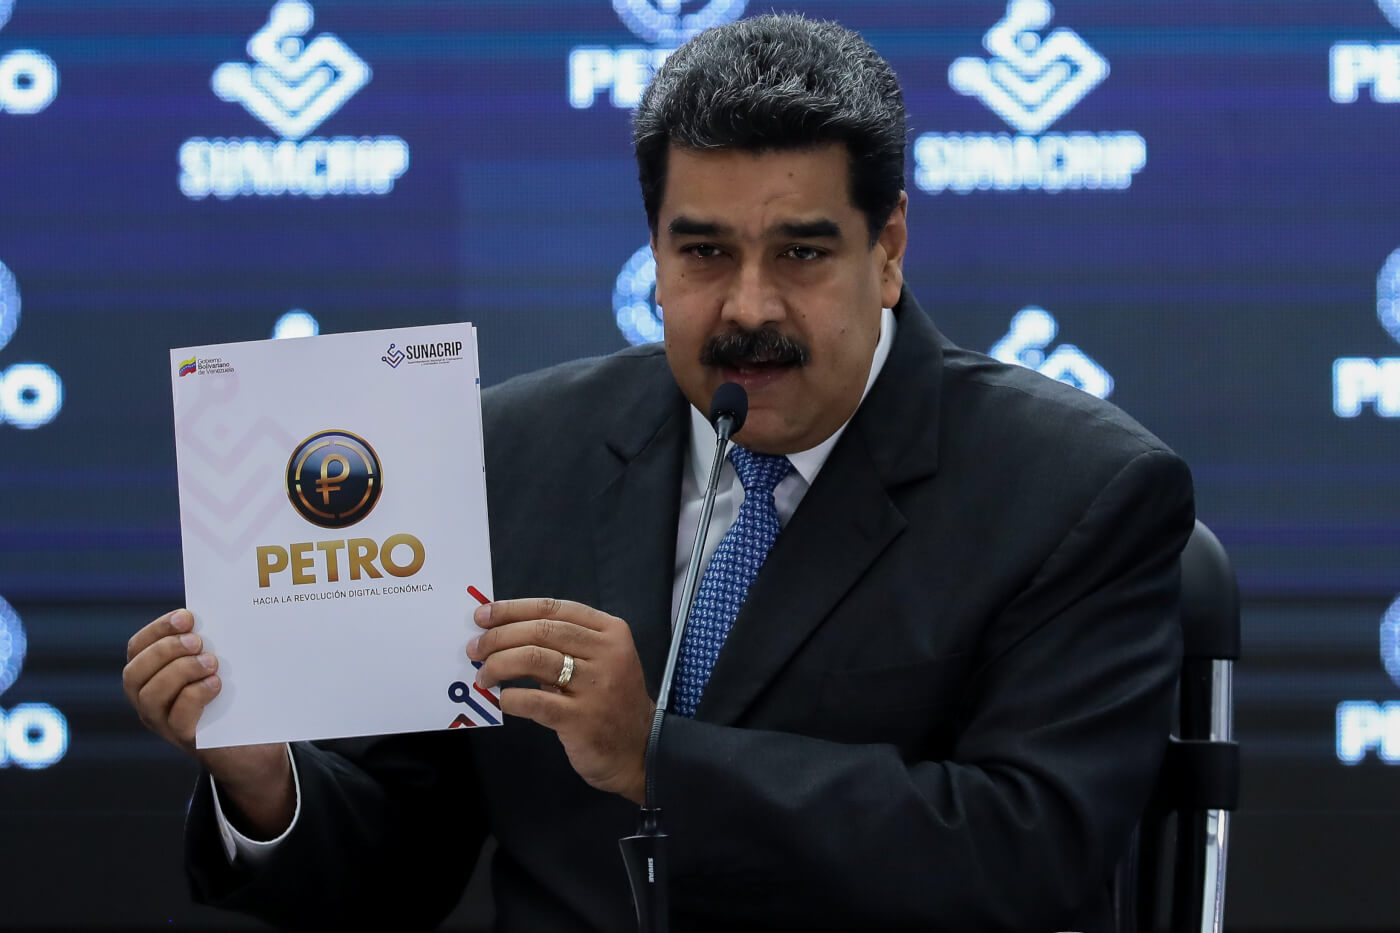 Maduro y el Petro ¿otra cortina para lavar dinero?